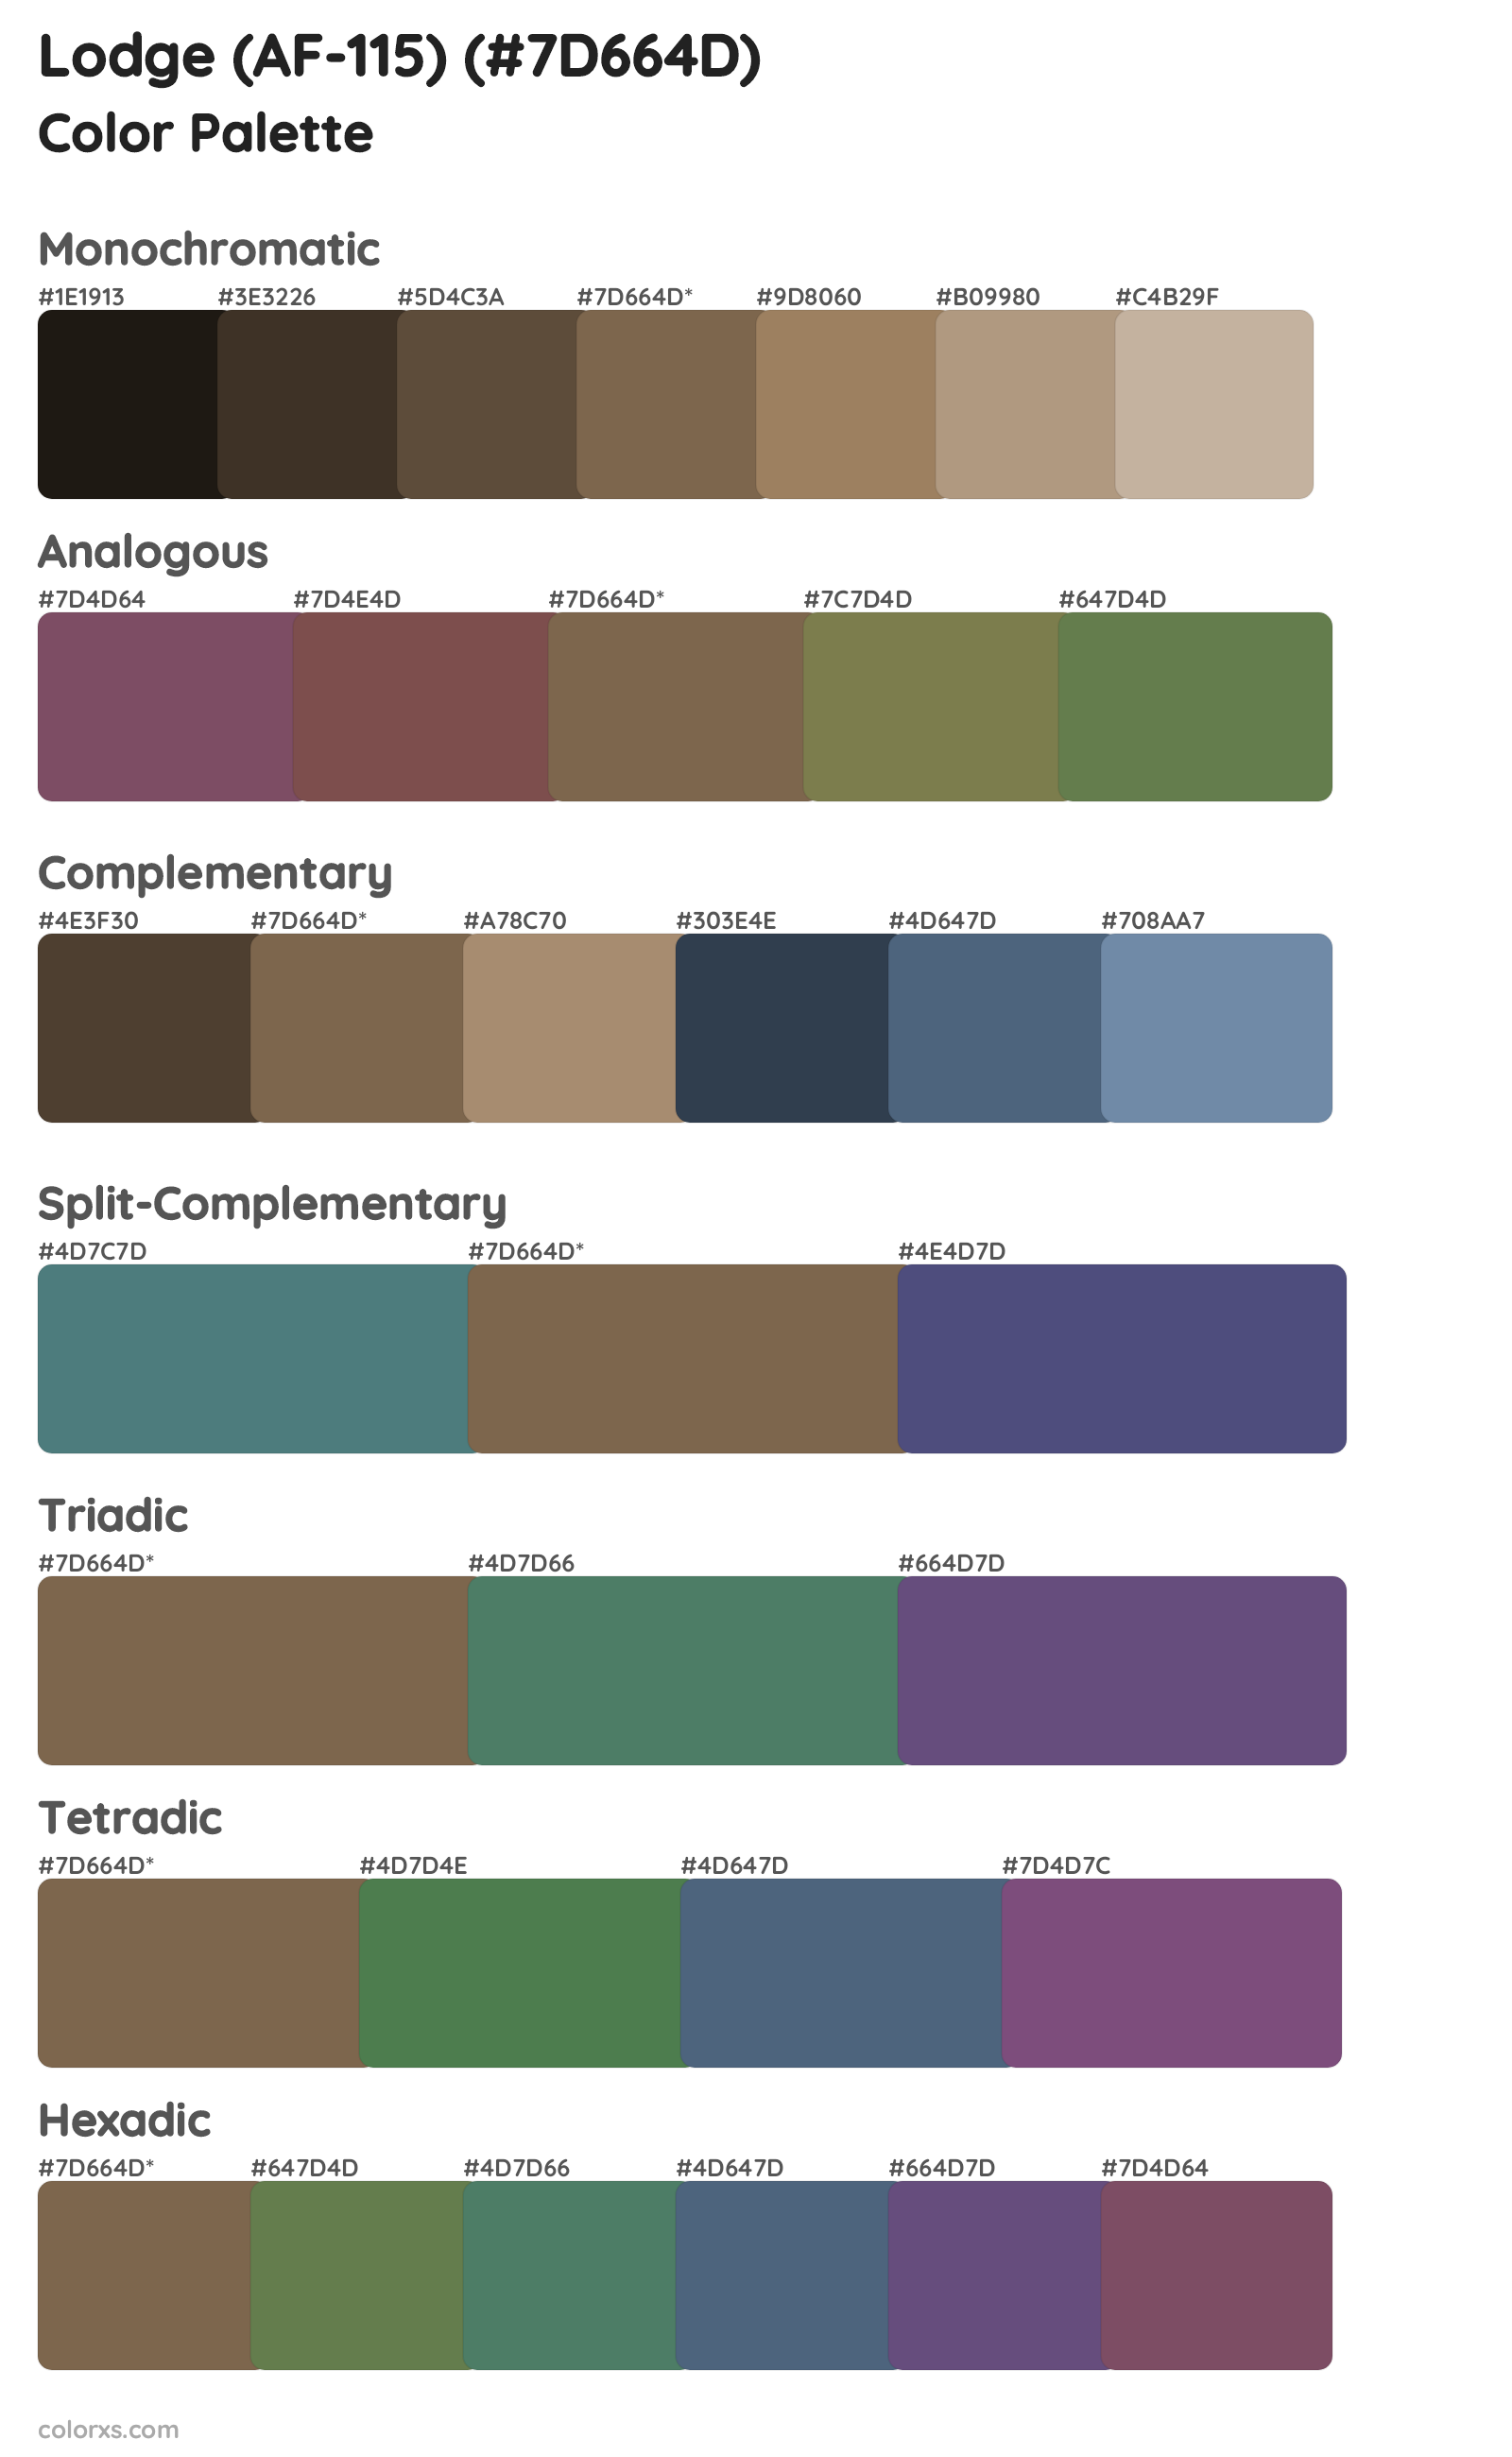 Lodge (AF-115) Color Scheme Palettes